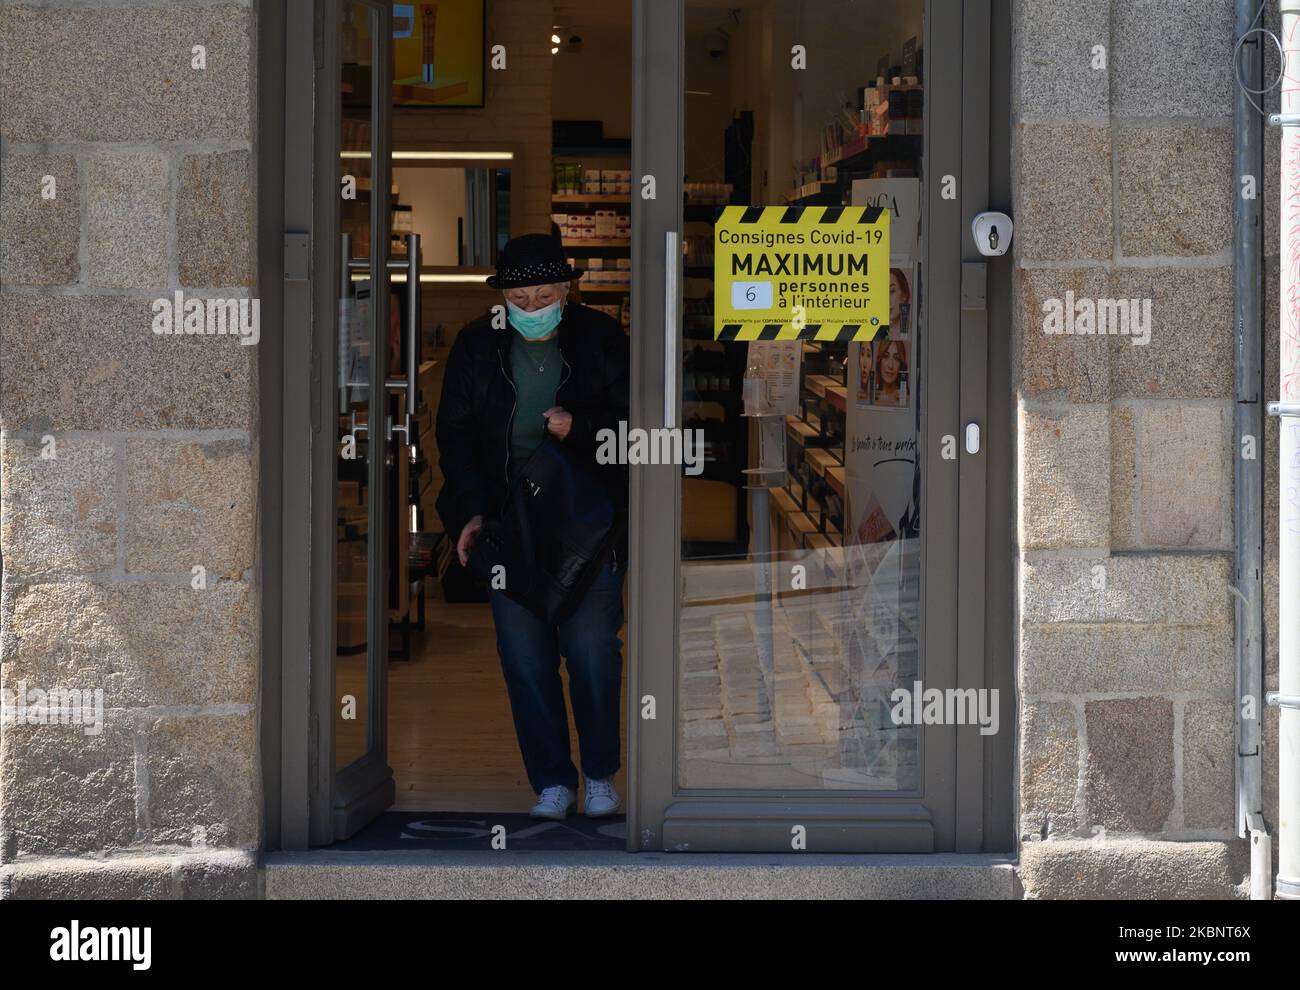 Certains commerçants limitent le nombre de clients dans leurs magasins afin de limiter le risque de contamination par le coronavirus / Covid-19 sur 15 mai 2020 à Rennes, France, le cinquième jour de la déconditionnement. (Photo par Estelle Ruiz/NurPhoto) Banque D'Images